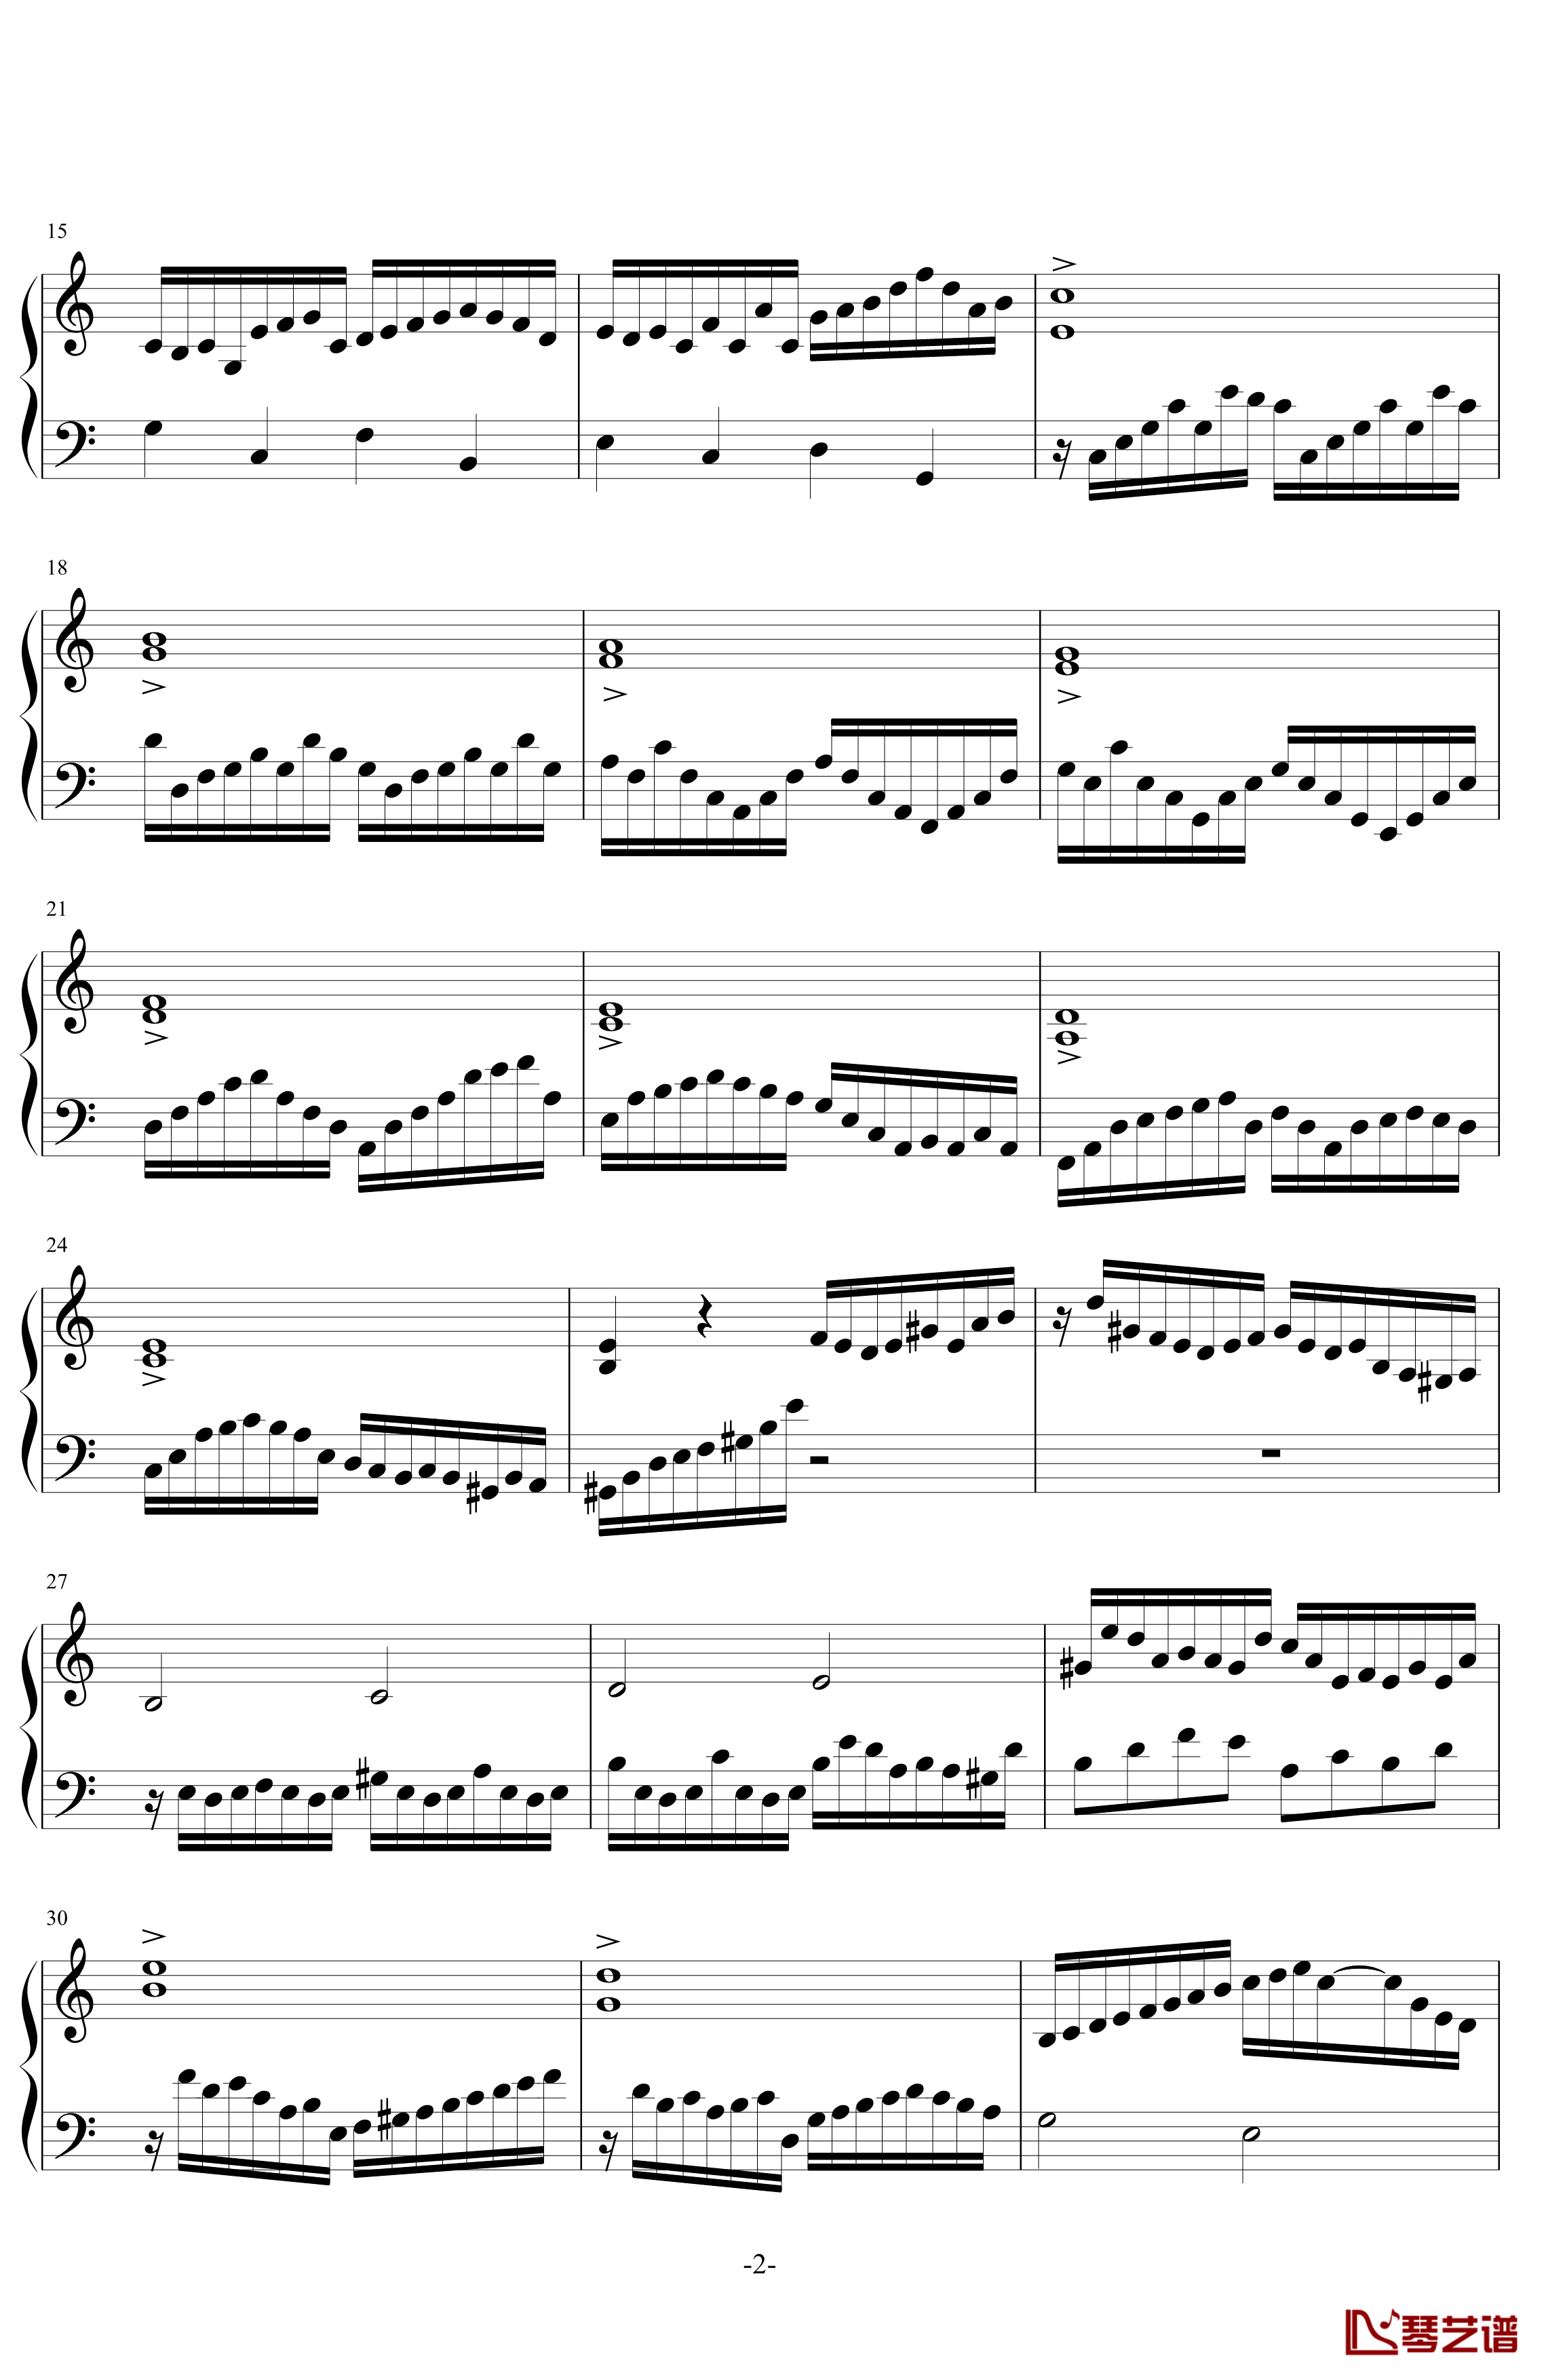 缓音律C大调 No.1钢琴谱-初版-舍勒七世2